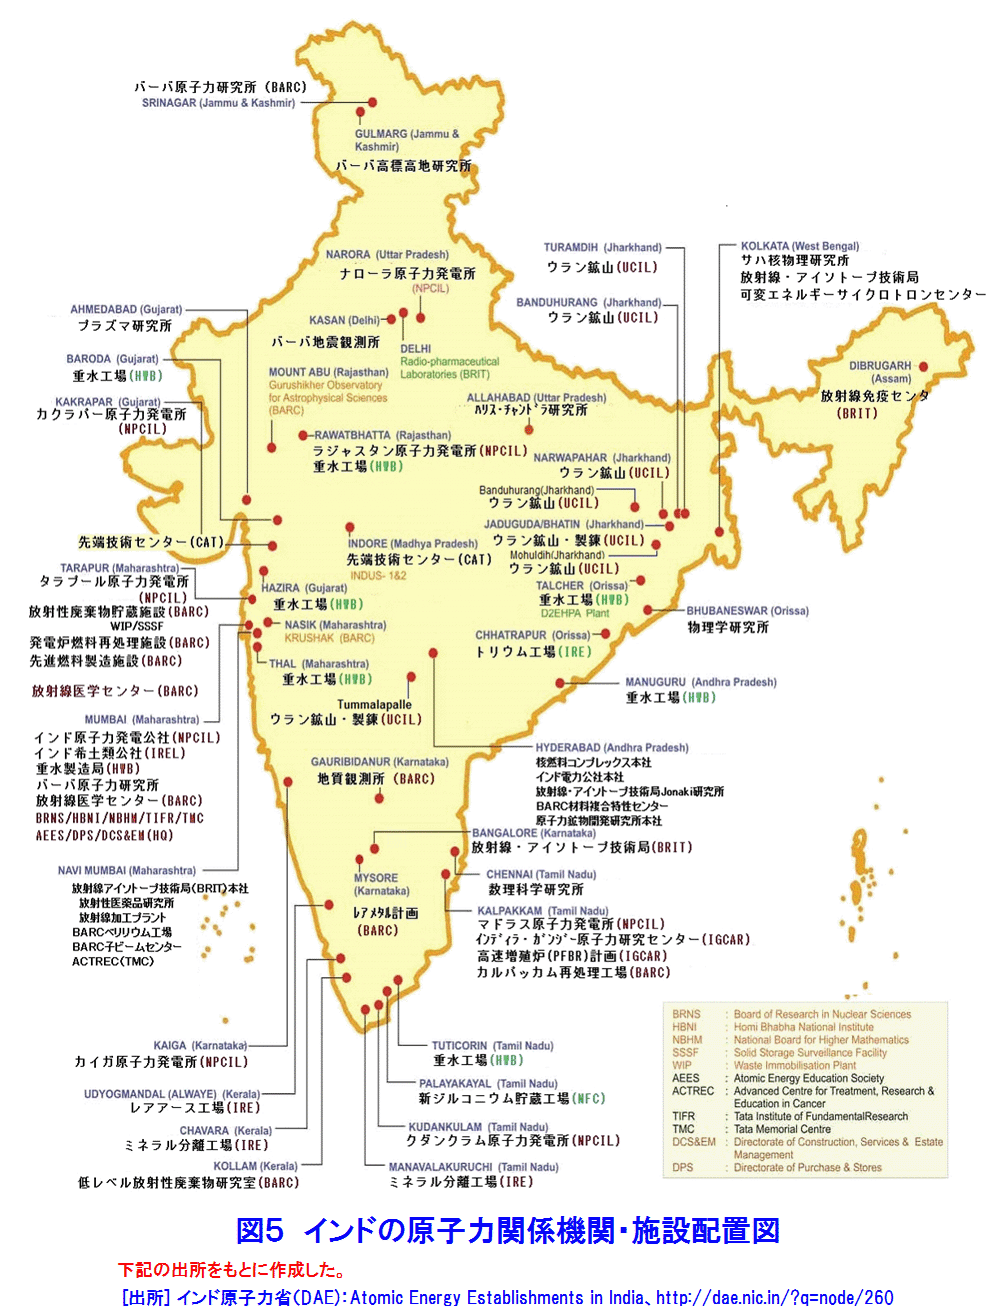 インドの原子力関係機関・施設配置図